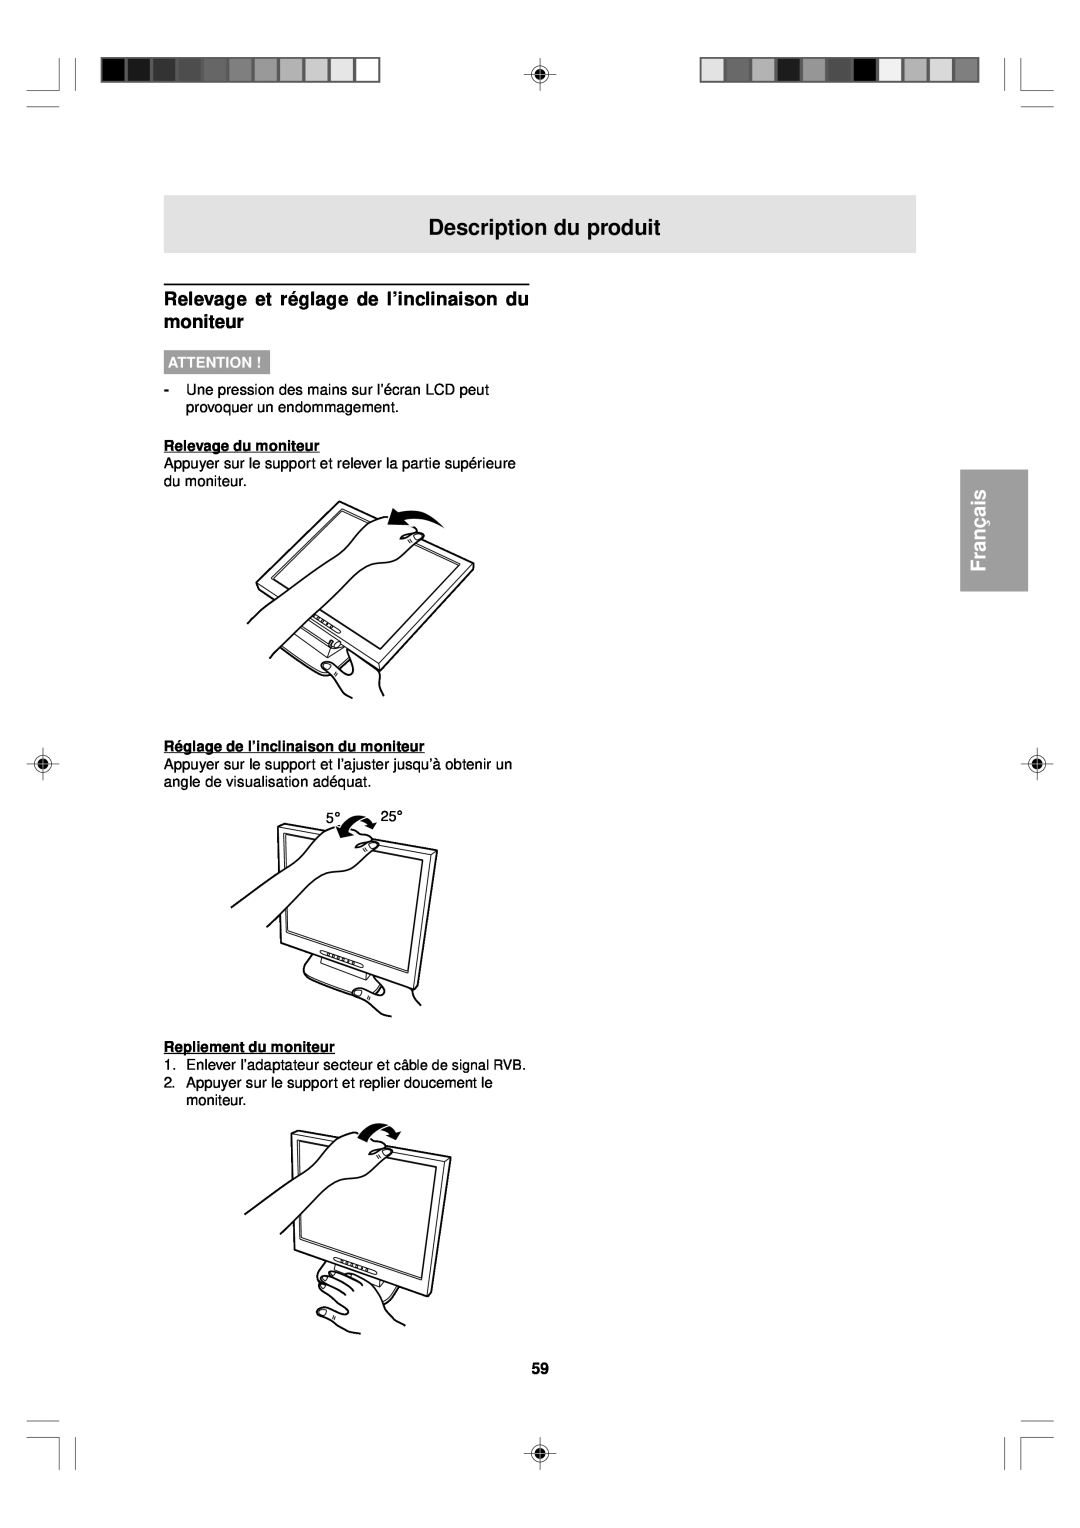 Sharp LL-T15V1 Description du produit, Relevage et réglage de l’inclinaison du moniteur, Relevage du moniteur, Français 